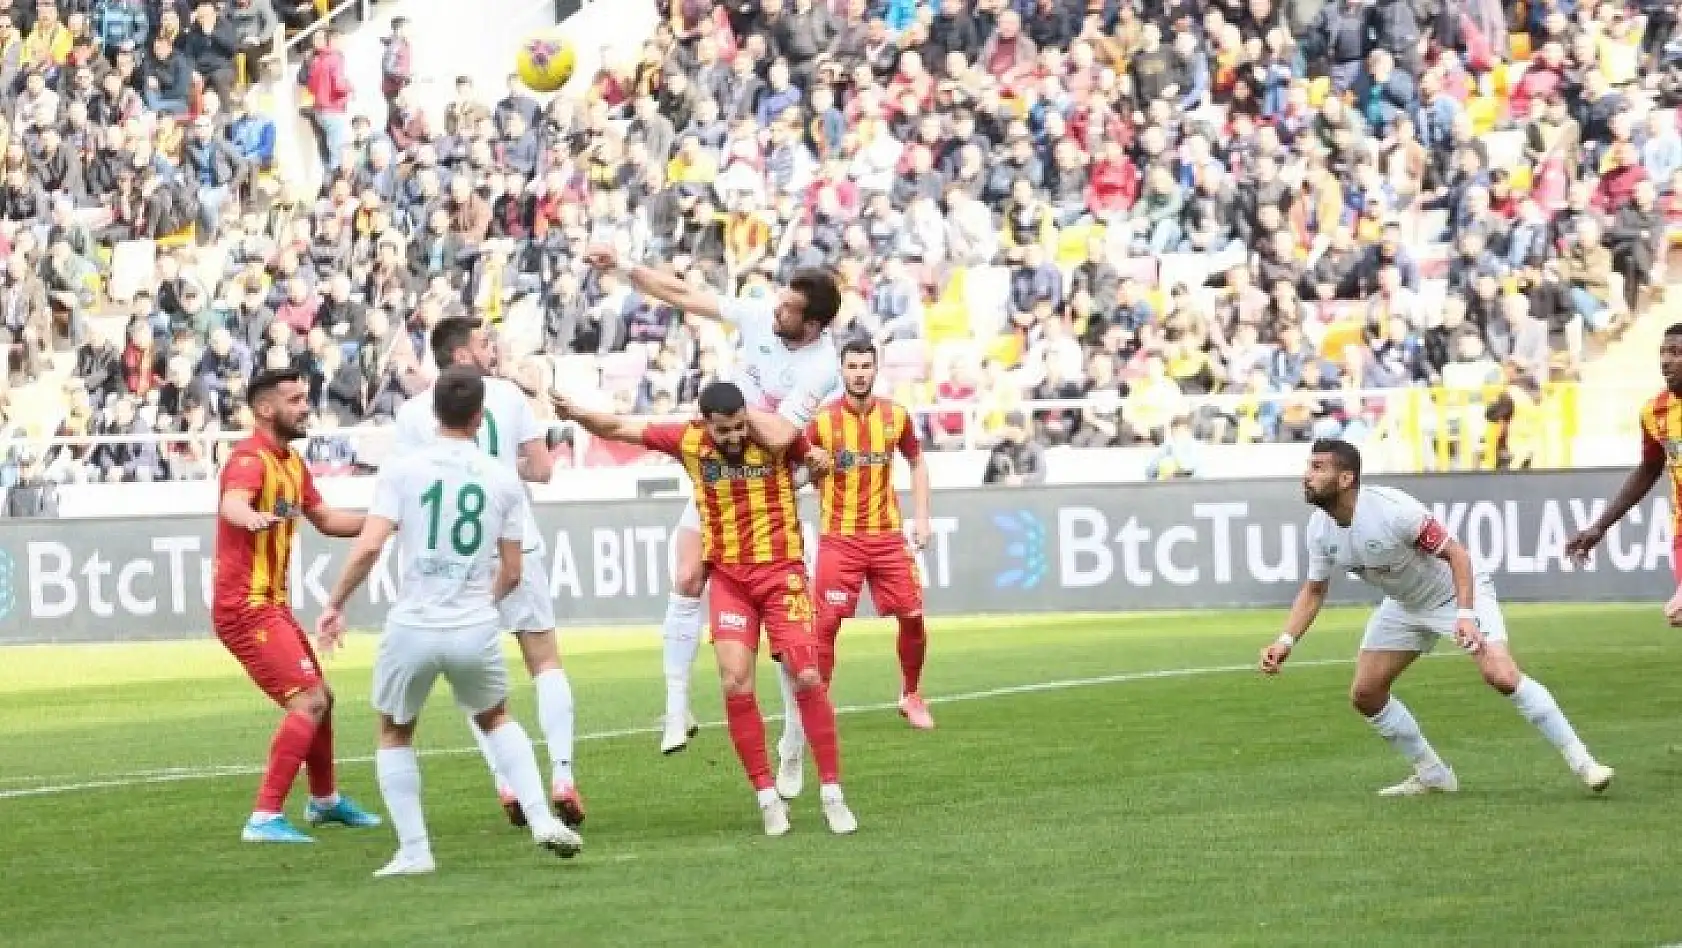 Süper Lig: Yeni Malatyaspor: 0 - Konyaspor: 1 (İlk yarı)